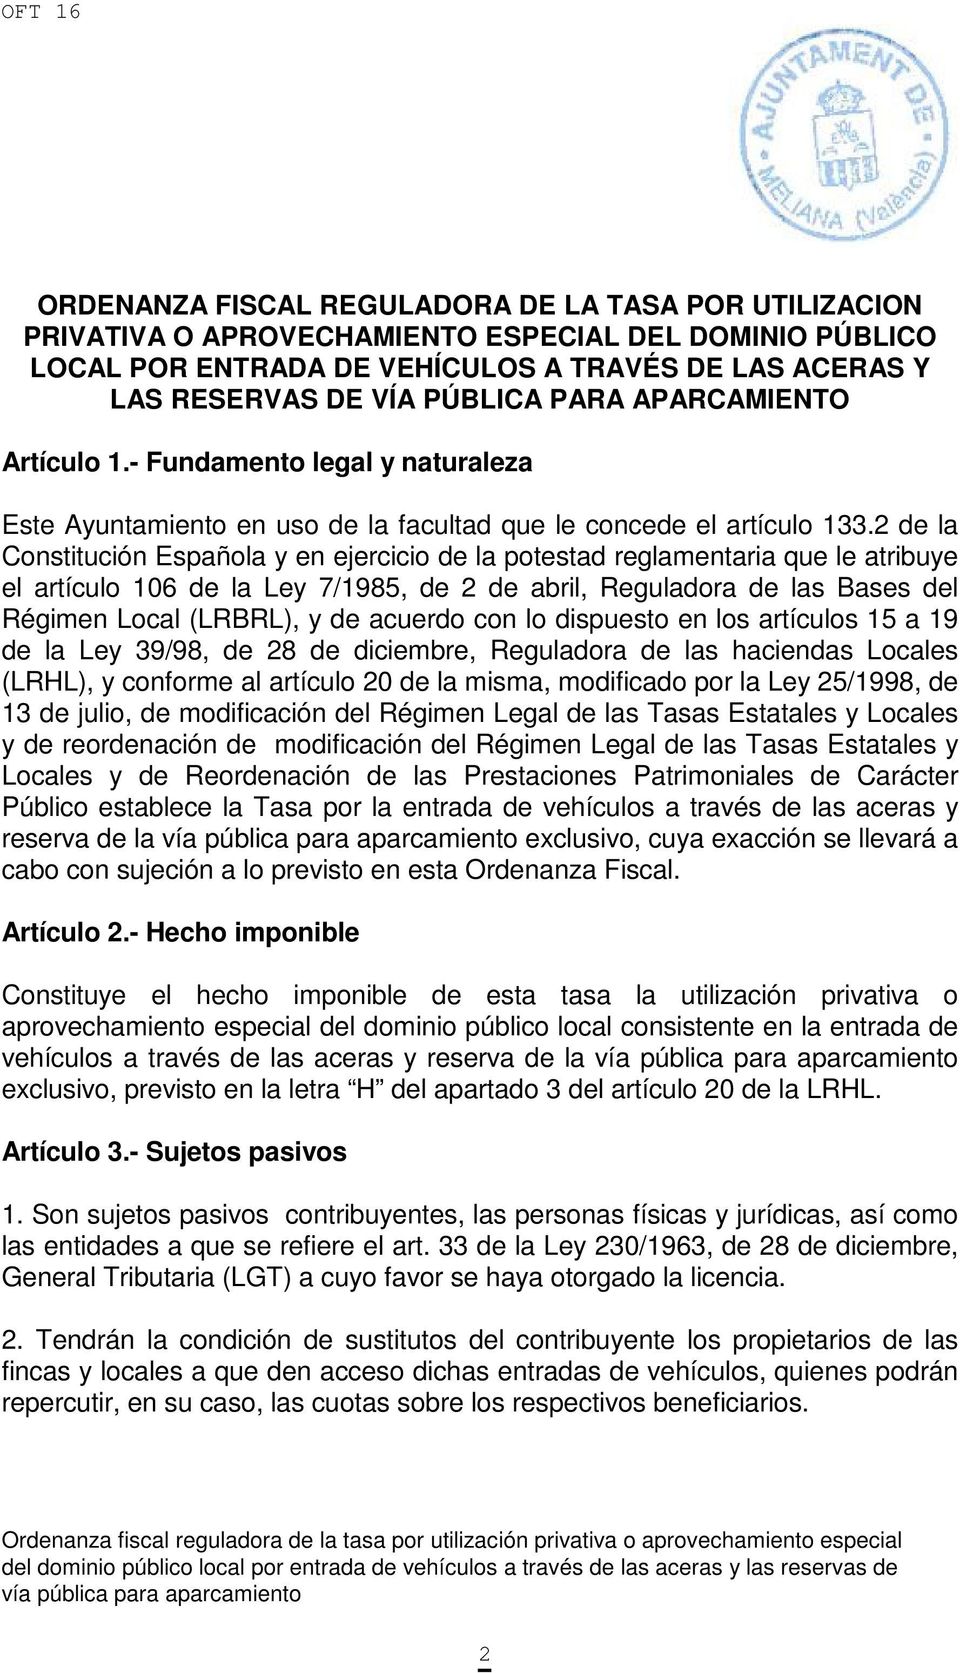 2 de la Constitución Española y en ejercicio de la potestad reglamentaria que le atribuye el artículo 106 de la Ley 7/1985, de 2 de abril, Reguladora de las Bases del Régimen Local (LRBRL), y de